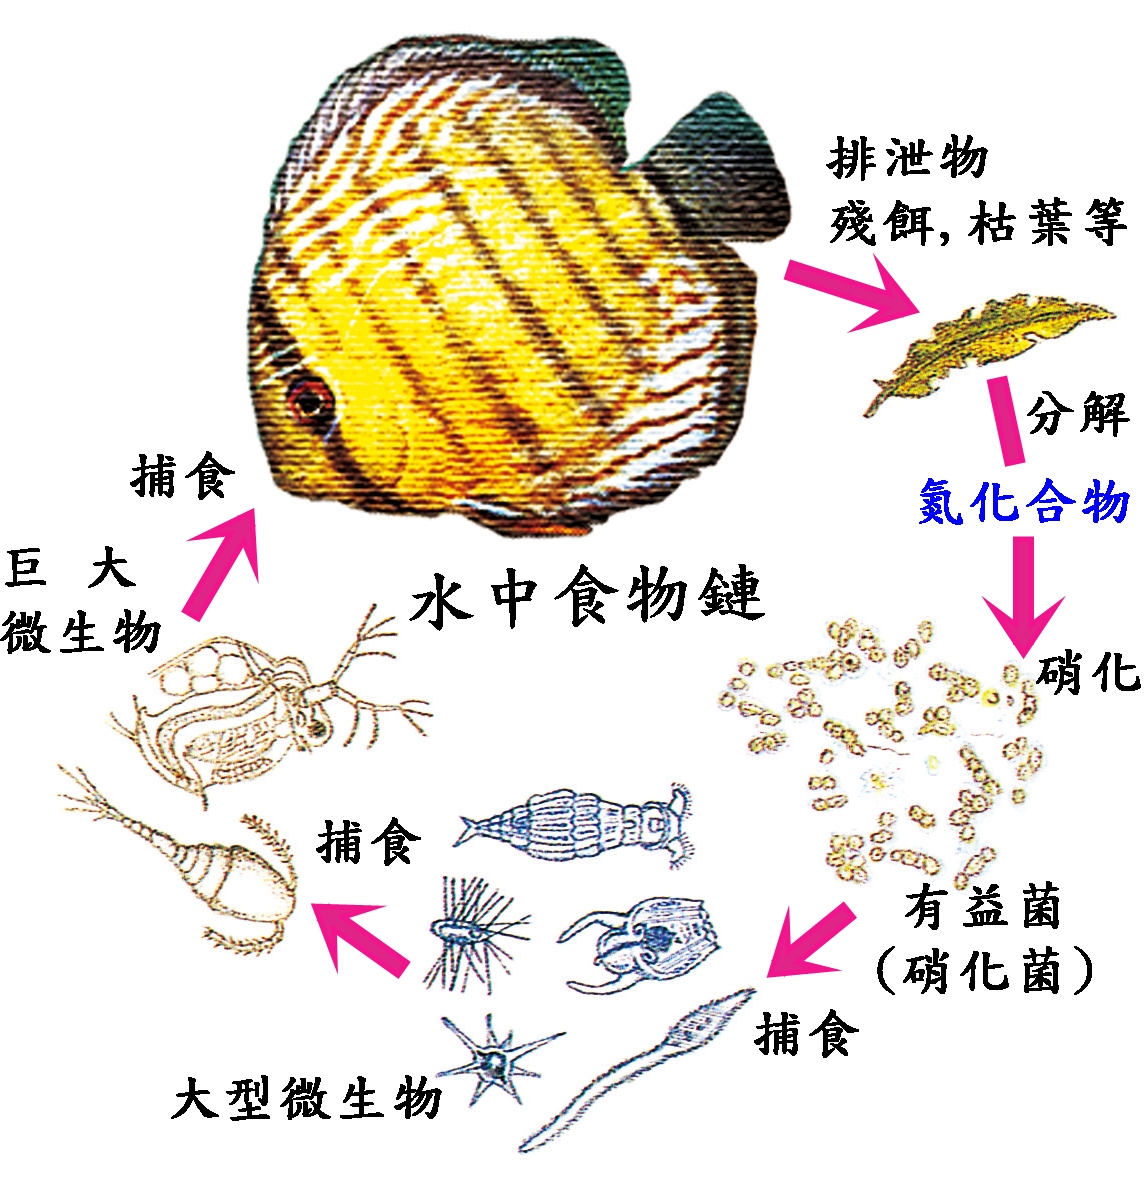 长江禁渔长达10年,会不会发生鱼类泛滥,导致水生态崩塌?